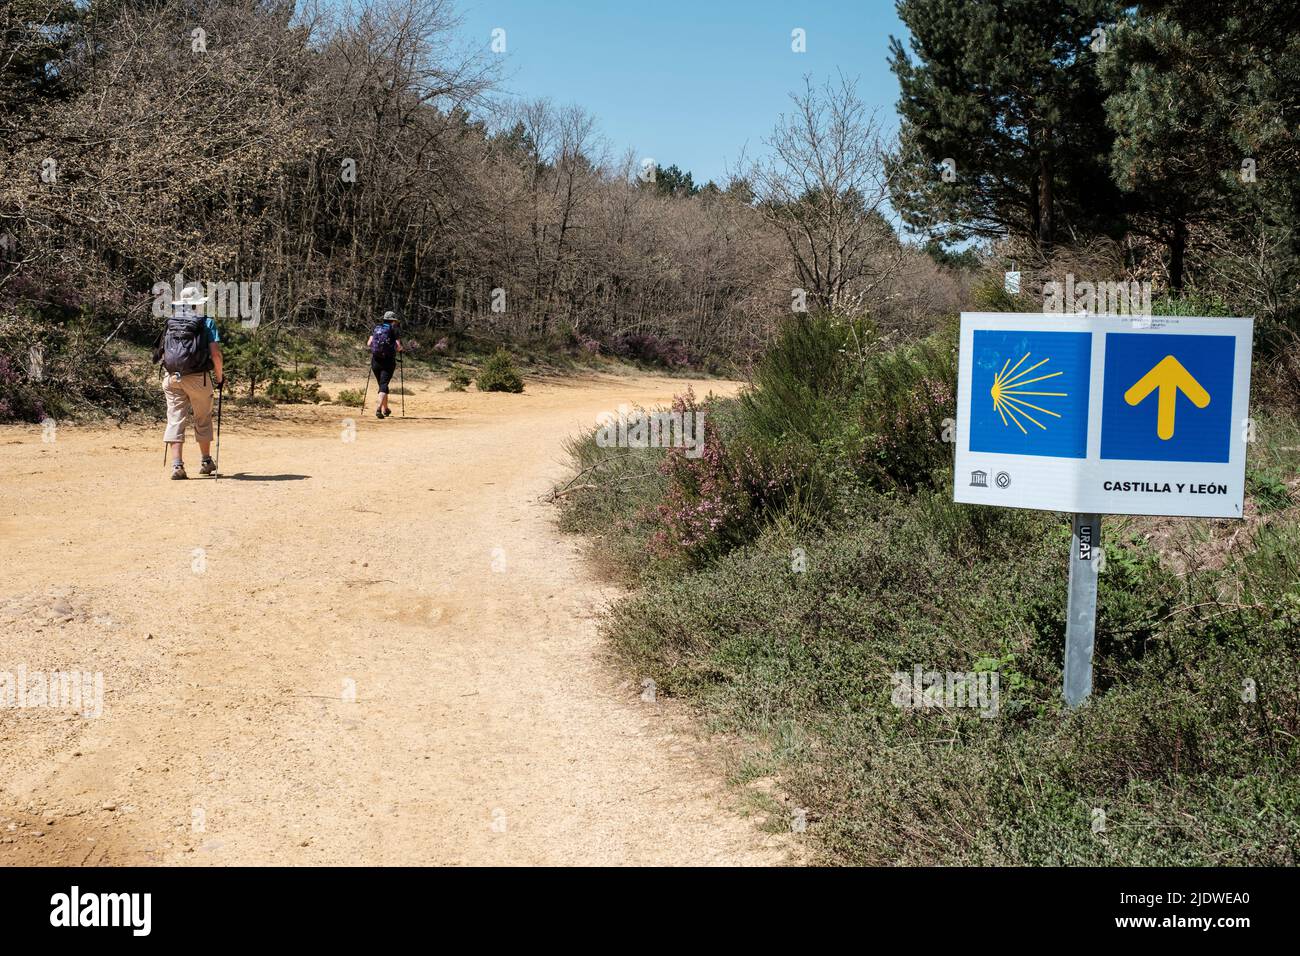 Spanien, Camino de Santiago. Schilder oder Markierungen mit Pfeilen und Jakobsmuscheln weisen den Weg zum Camino. Stockfoto